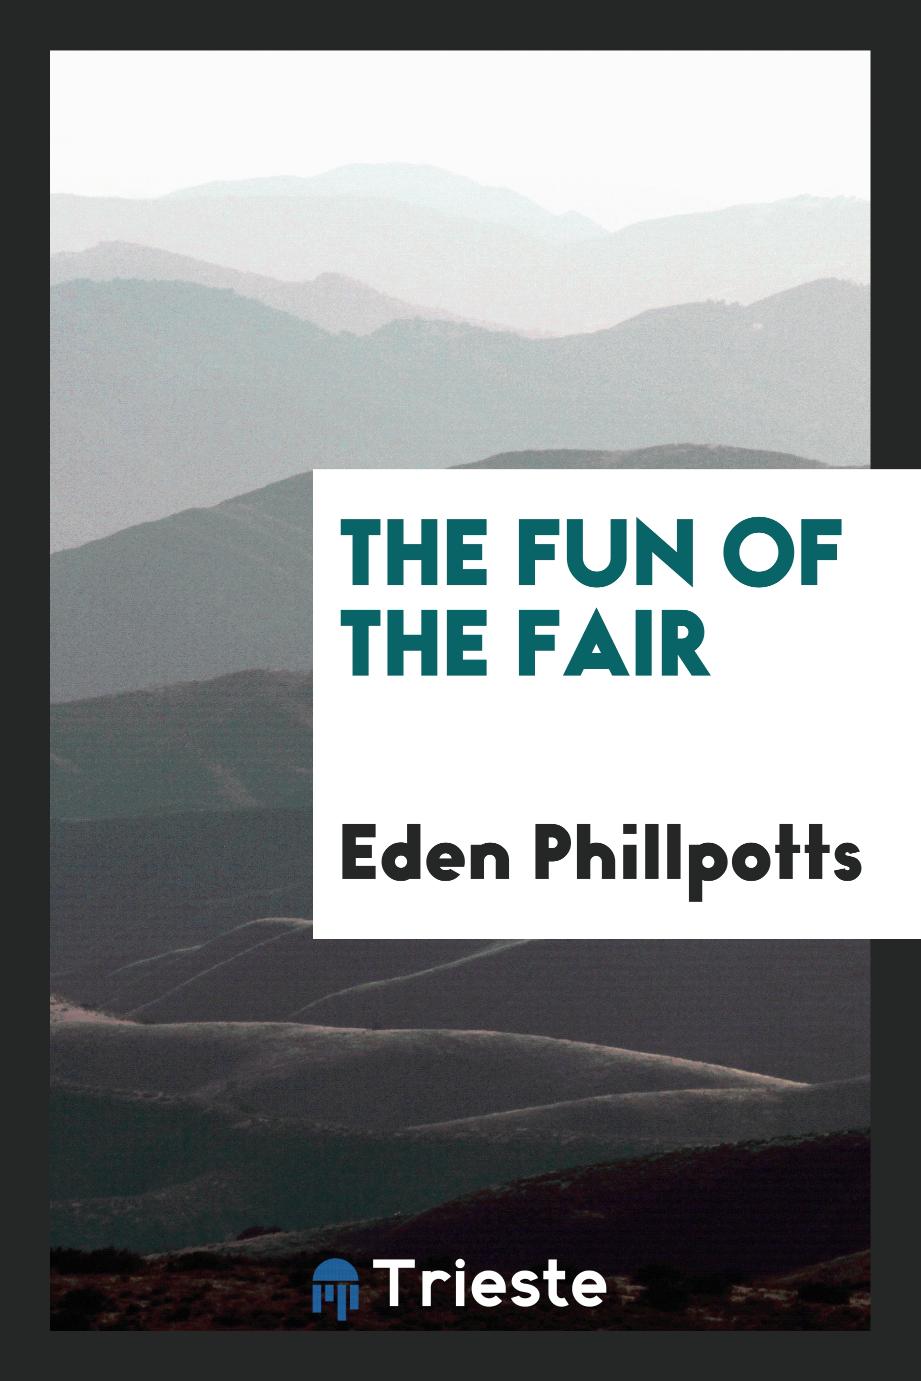 The fun of the fair